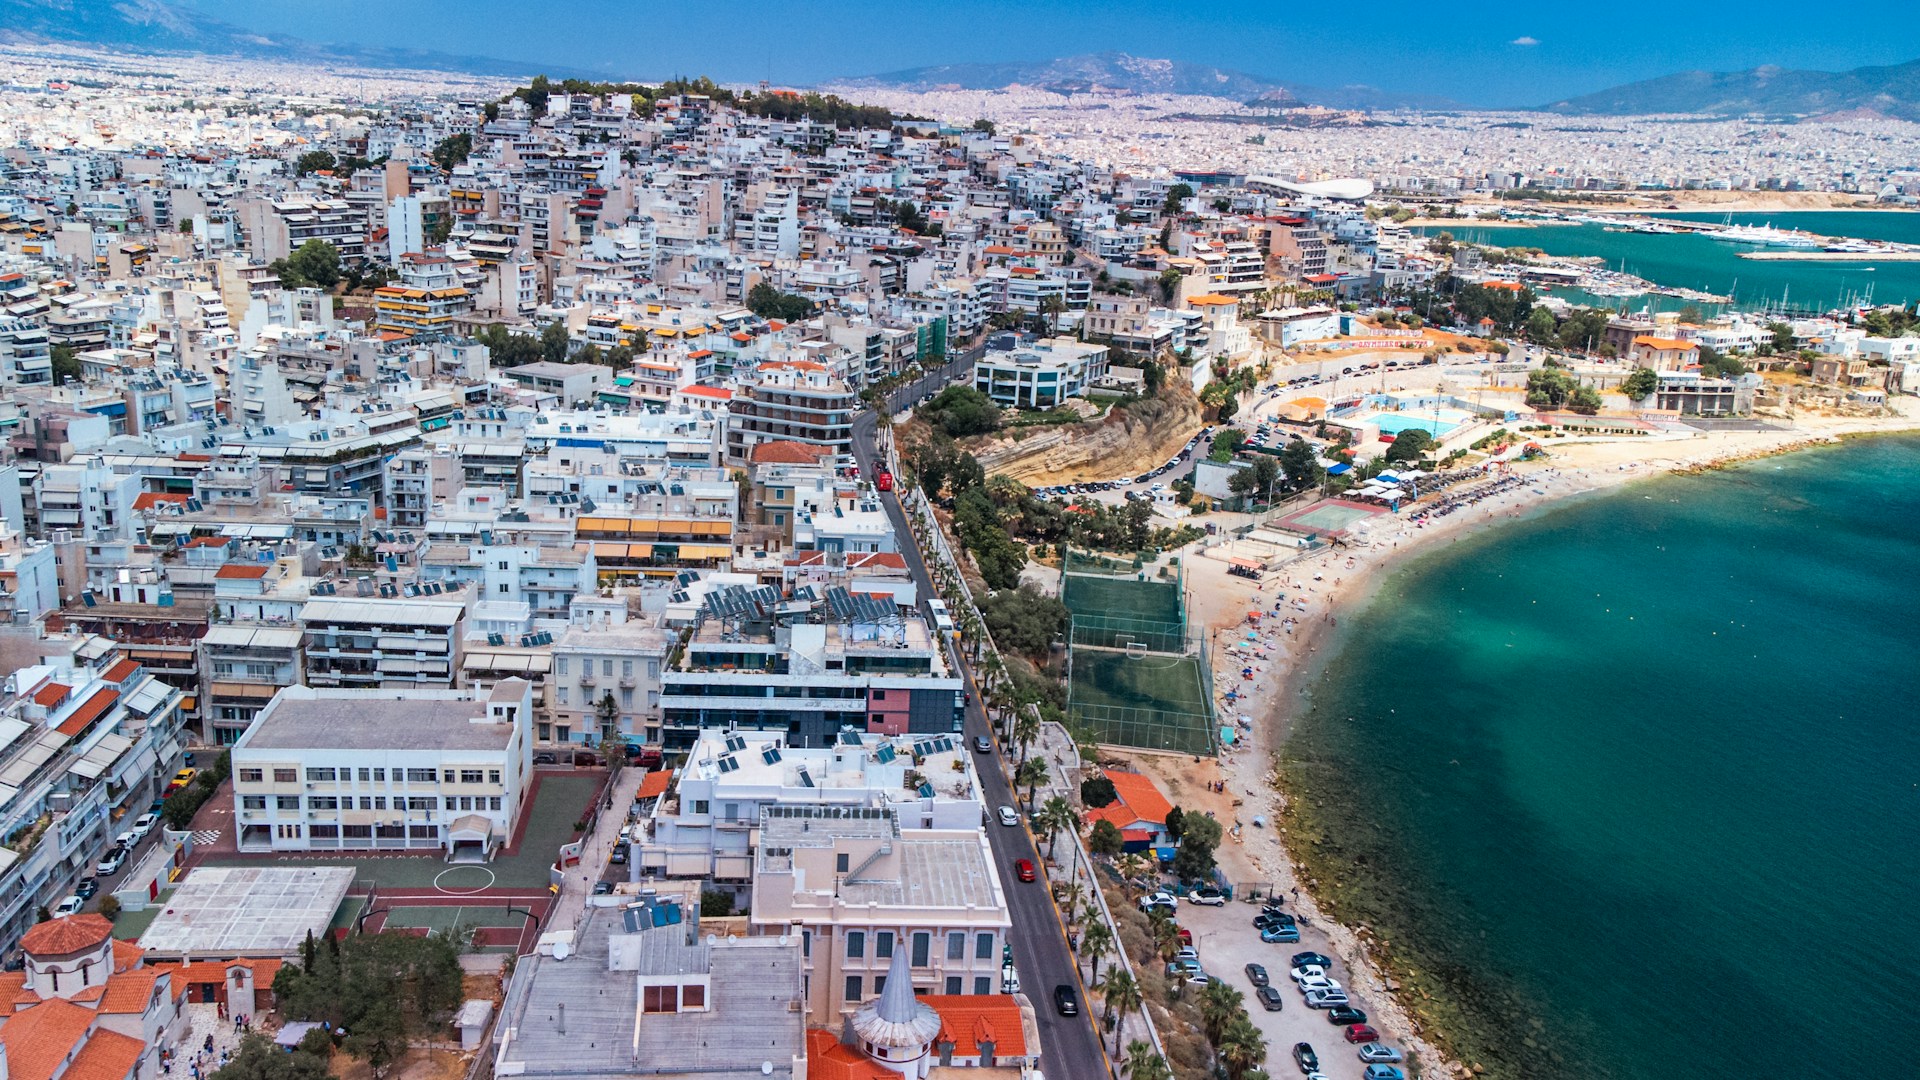 A lo largo de la costa del golfo Sarónico, la Costa de Atenas ofrece hermosas playas y restaurantes frente al mar con impresionantes vistas al mar Egeo.